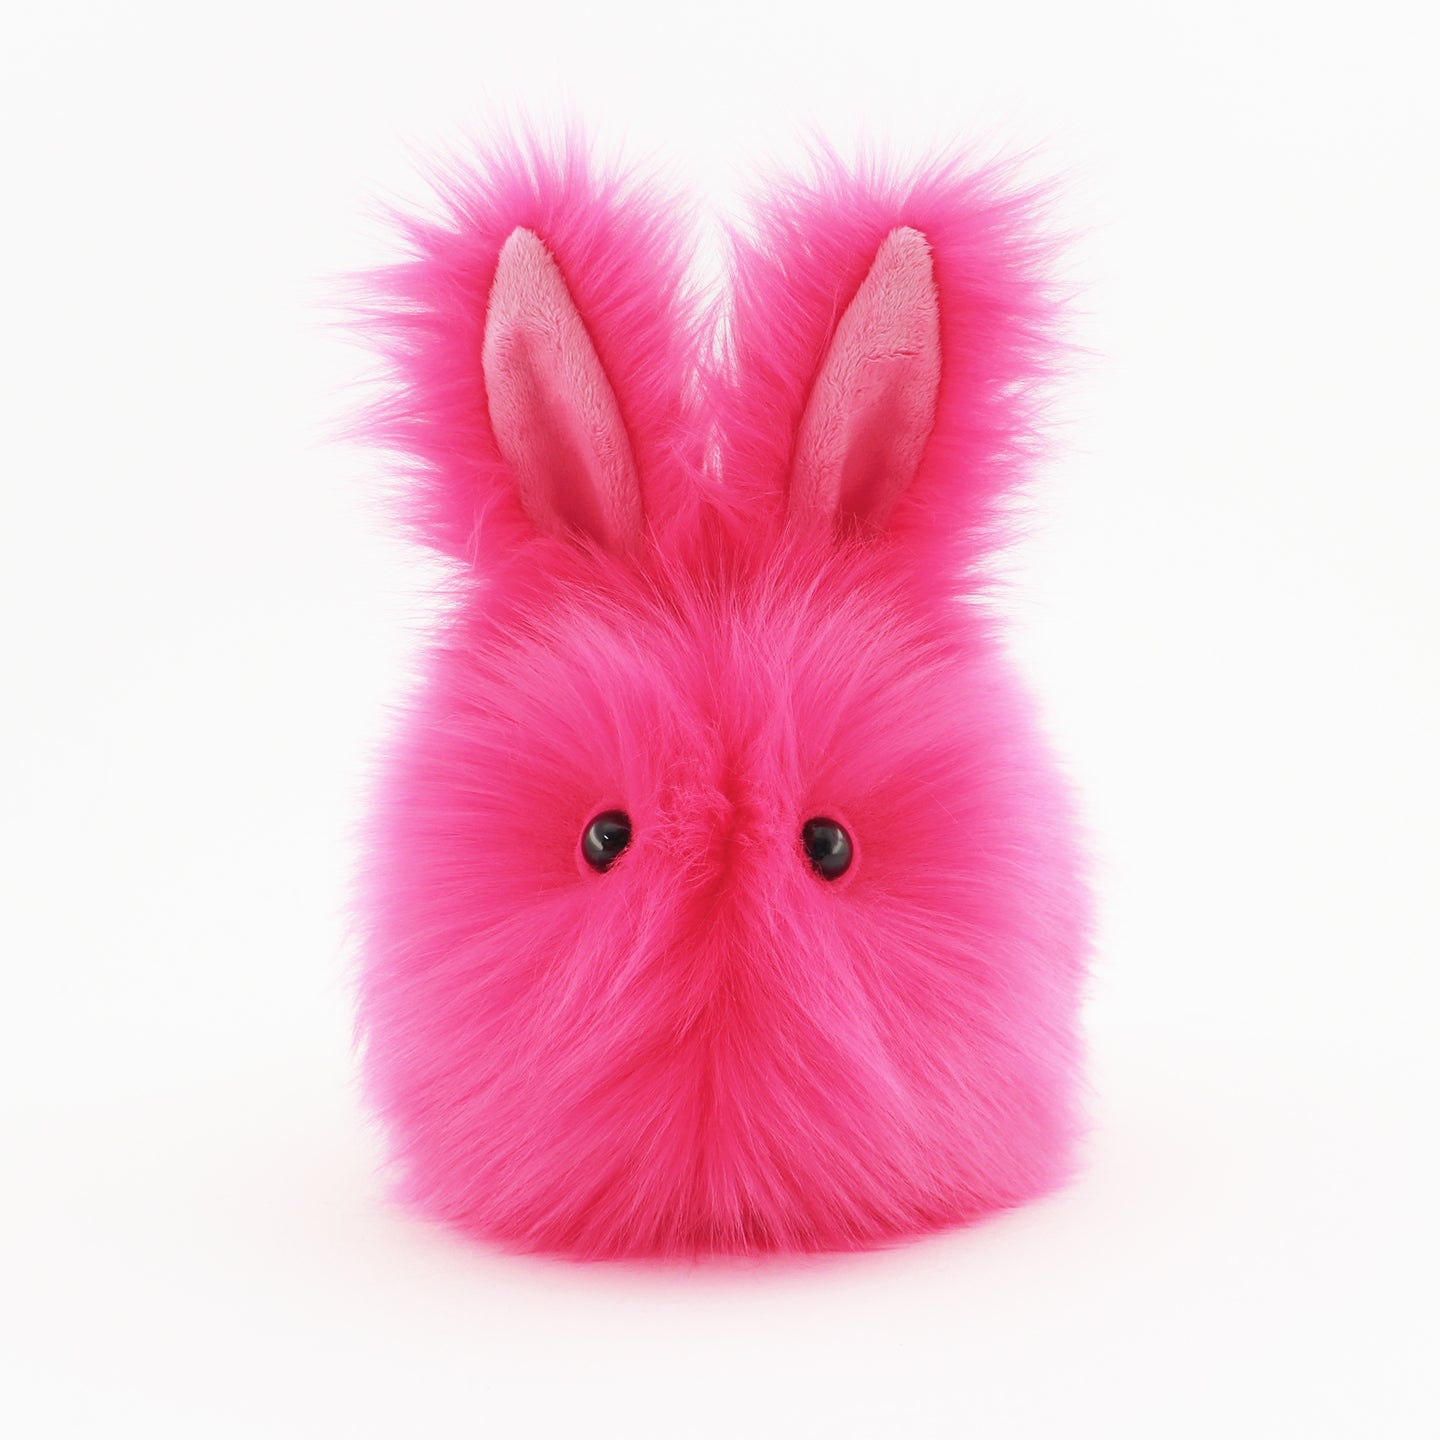 Petunia the Bunny Stuffed Animal Plush Toy – FUZZIGGLES